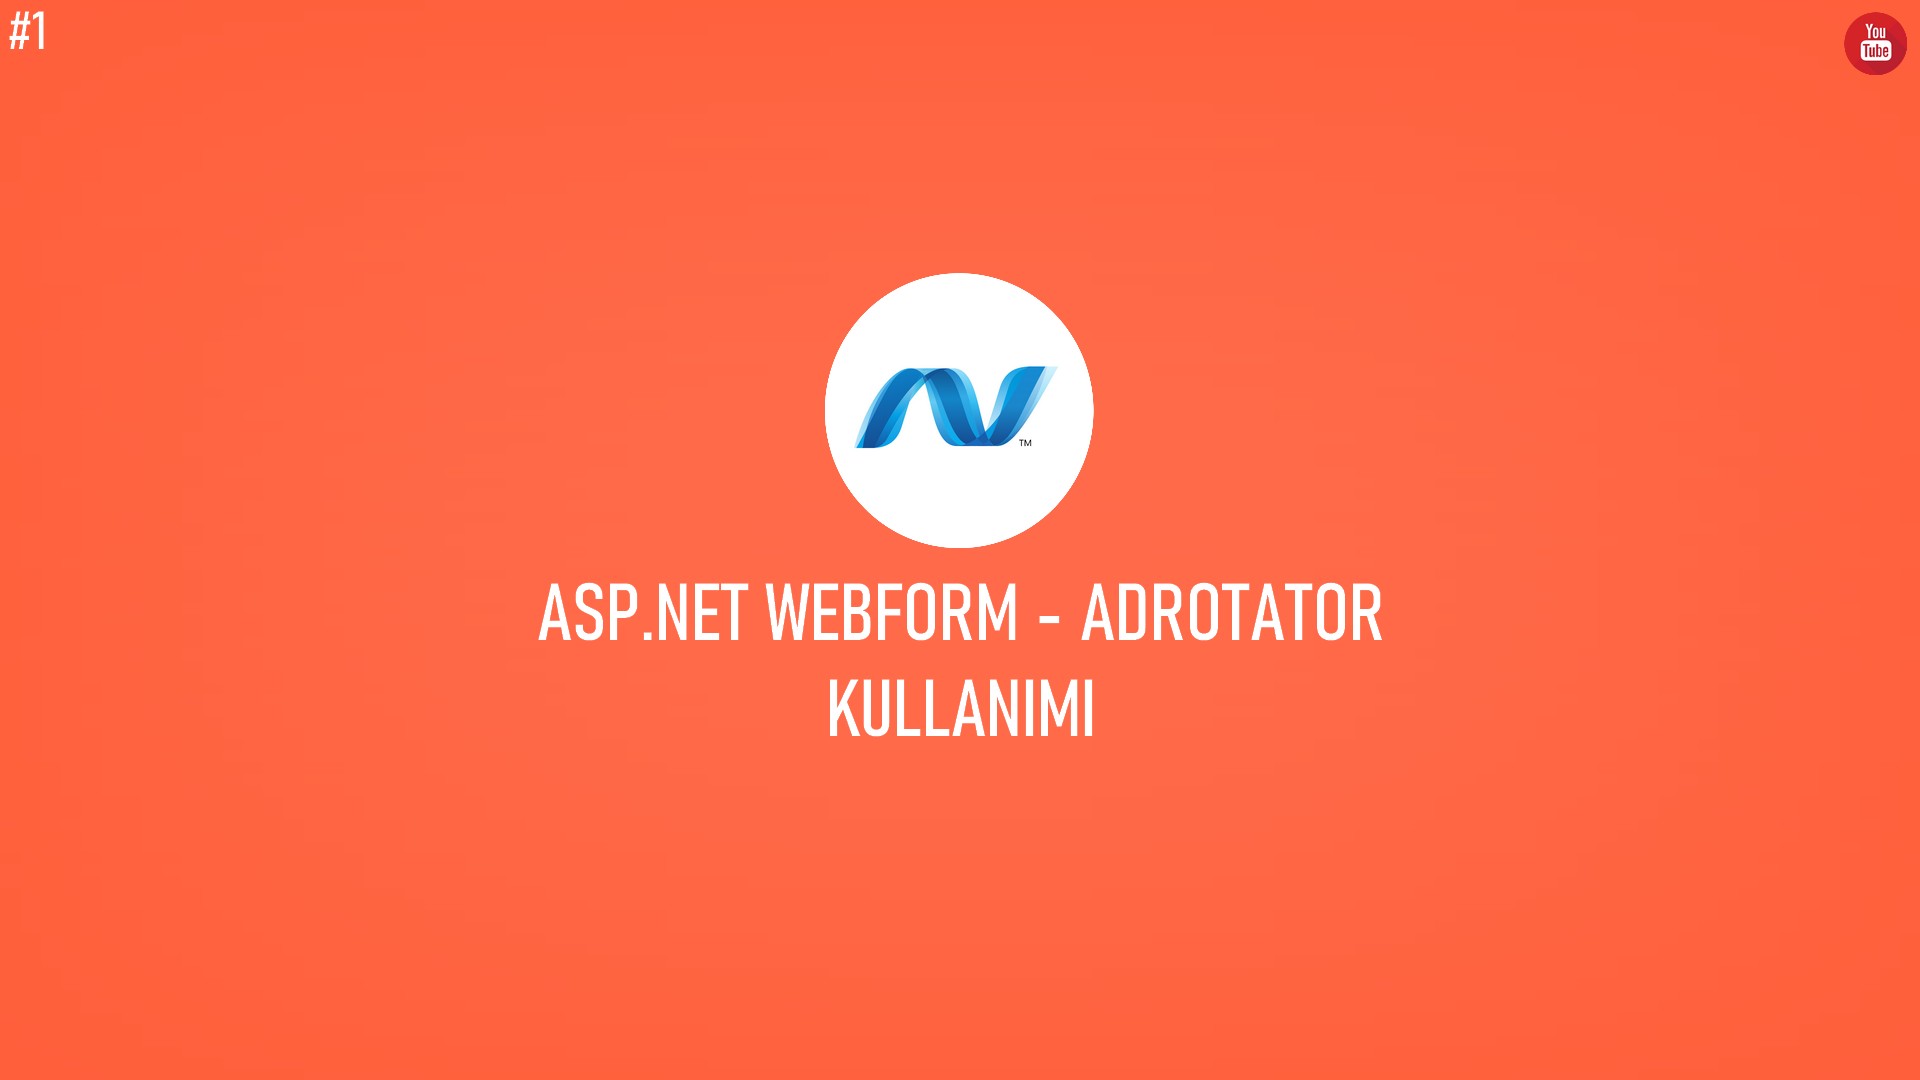 C# ASP.NET WebForm - AdRotator Kullanımı (Video İçerik) başlıklı içeriğin kapak resmi.